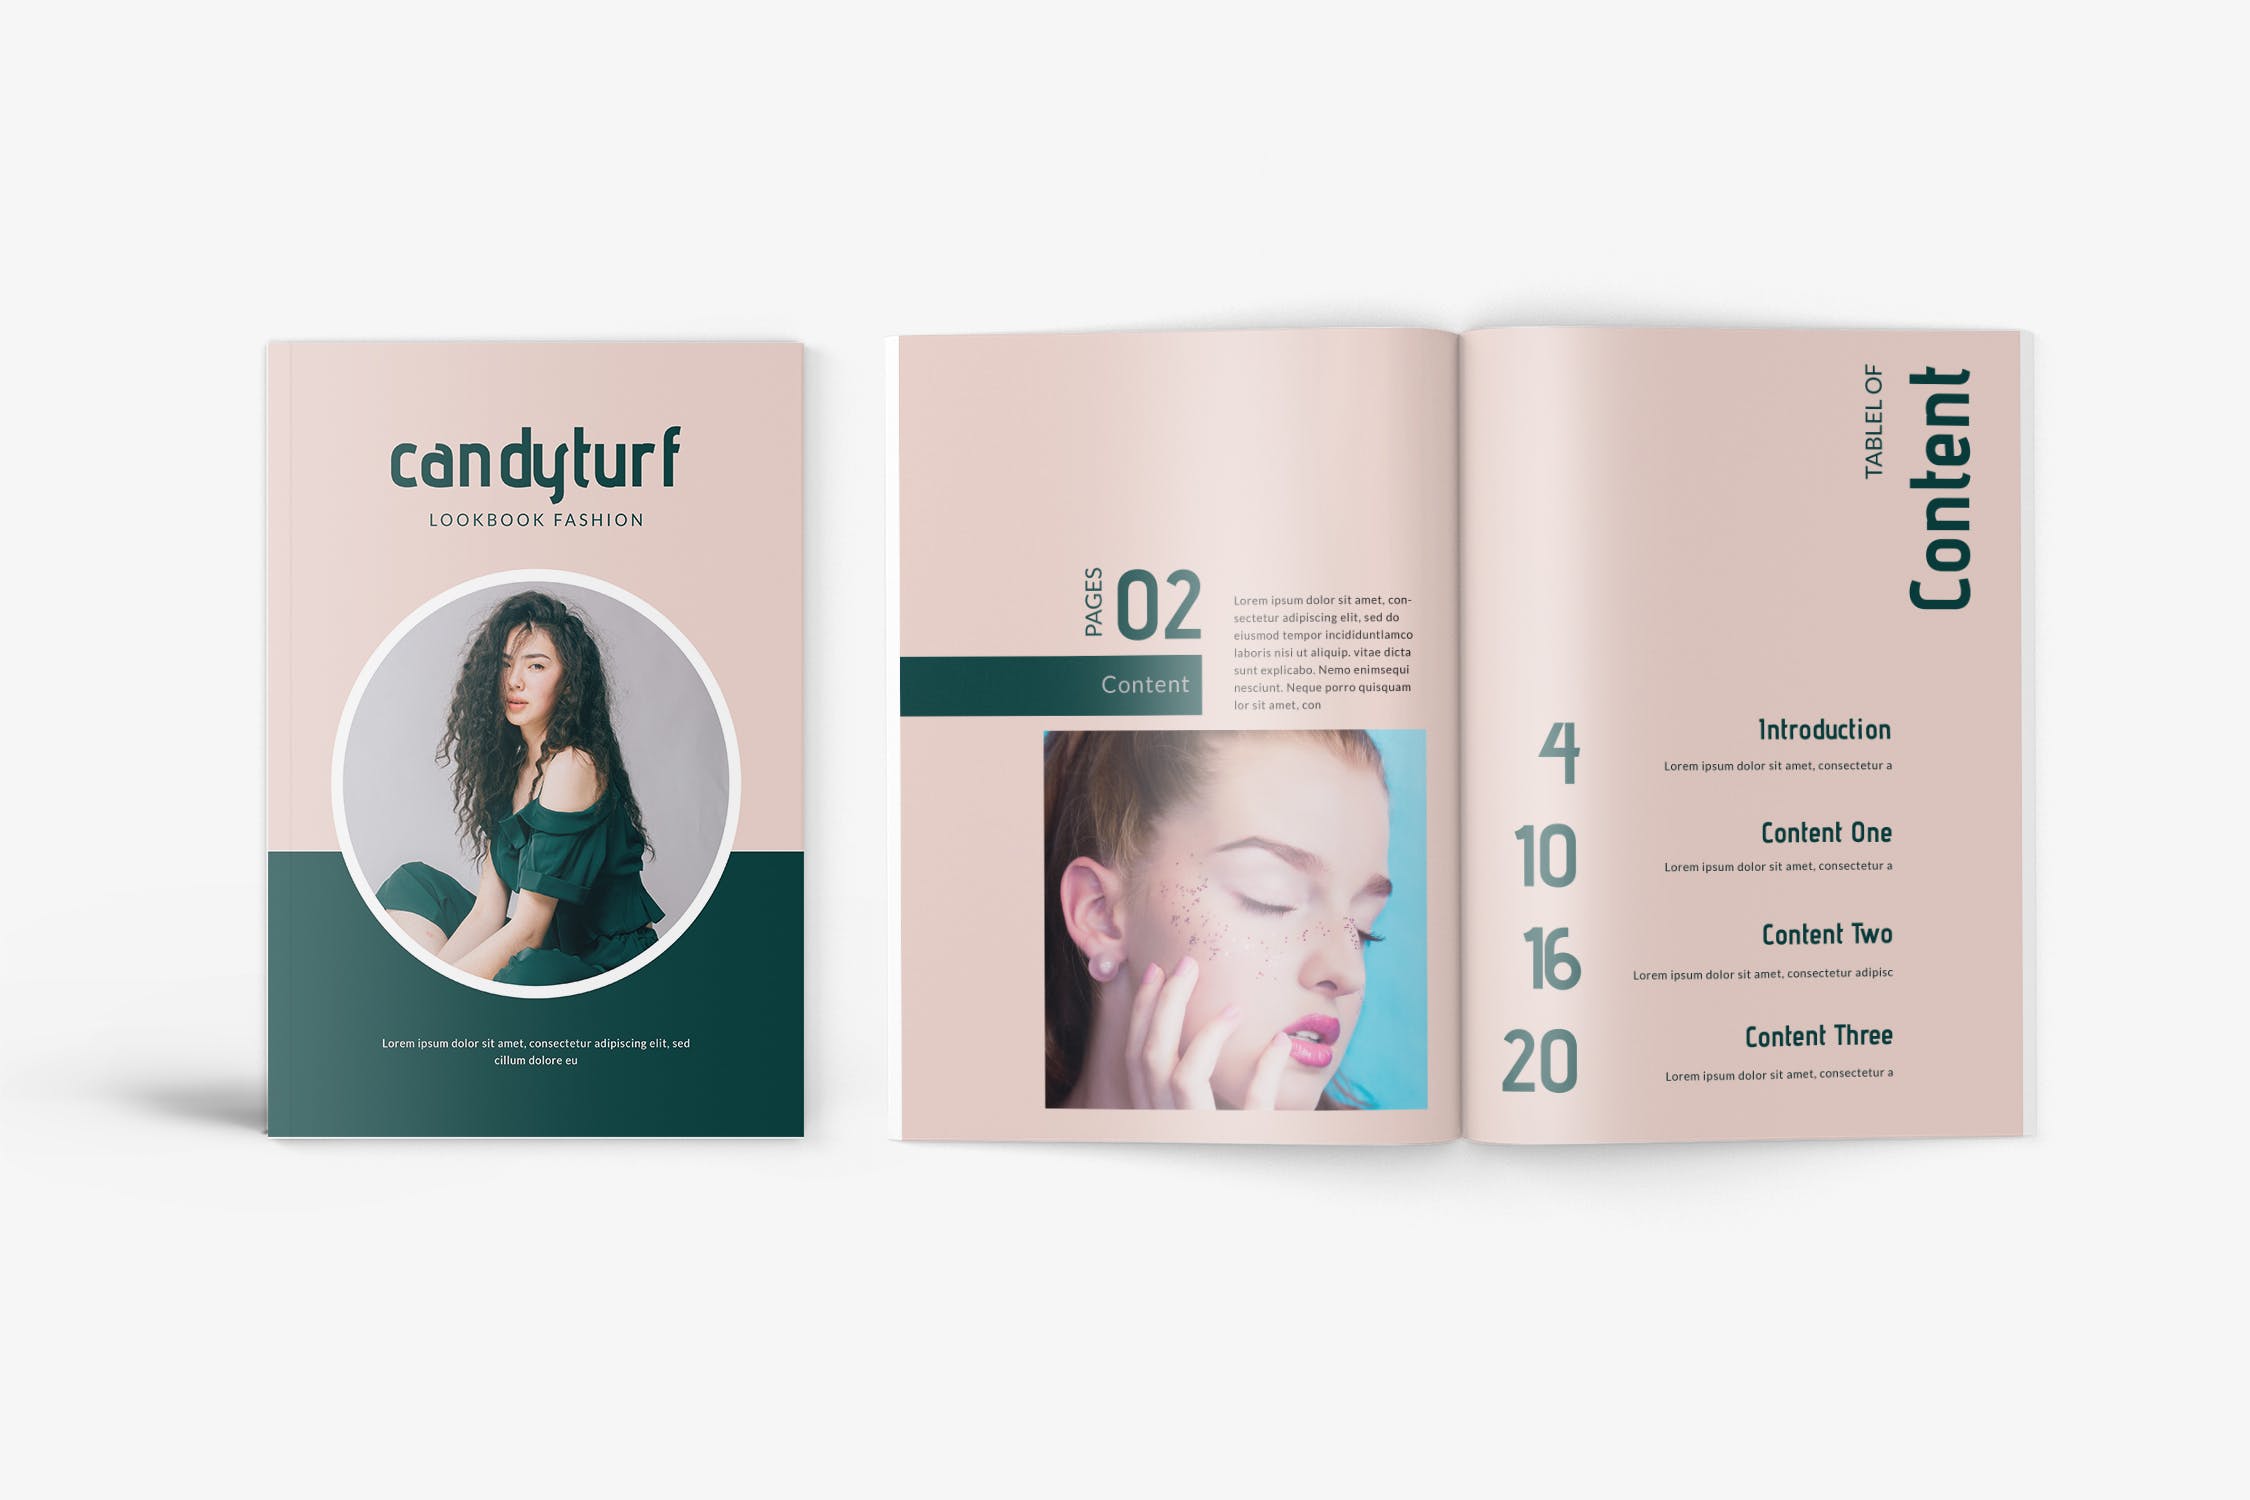 时尚服饰品牌产品16设计网精选目录设计模板 Candyturf Fashion Lookbook Catalogue插图